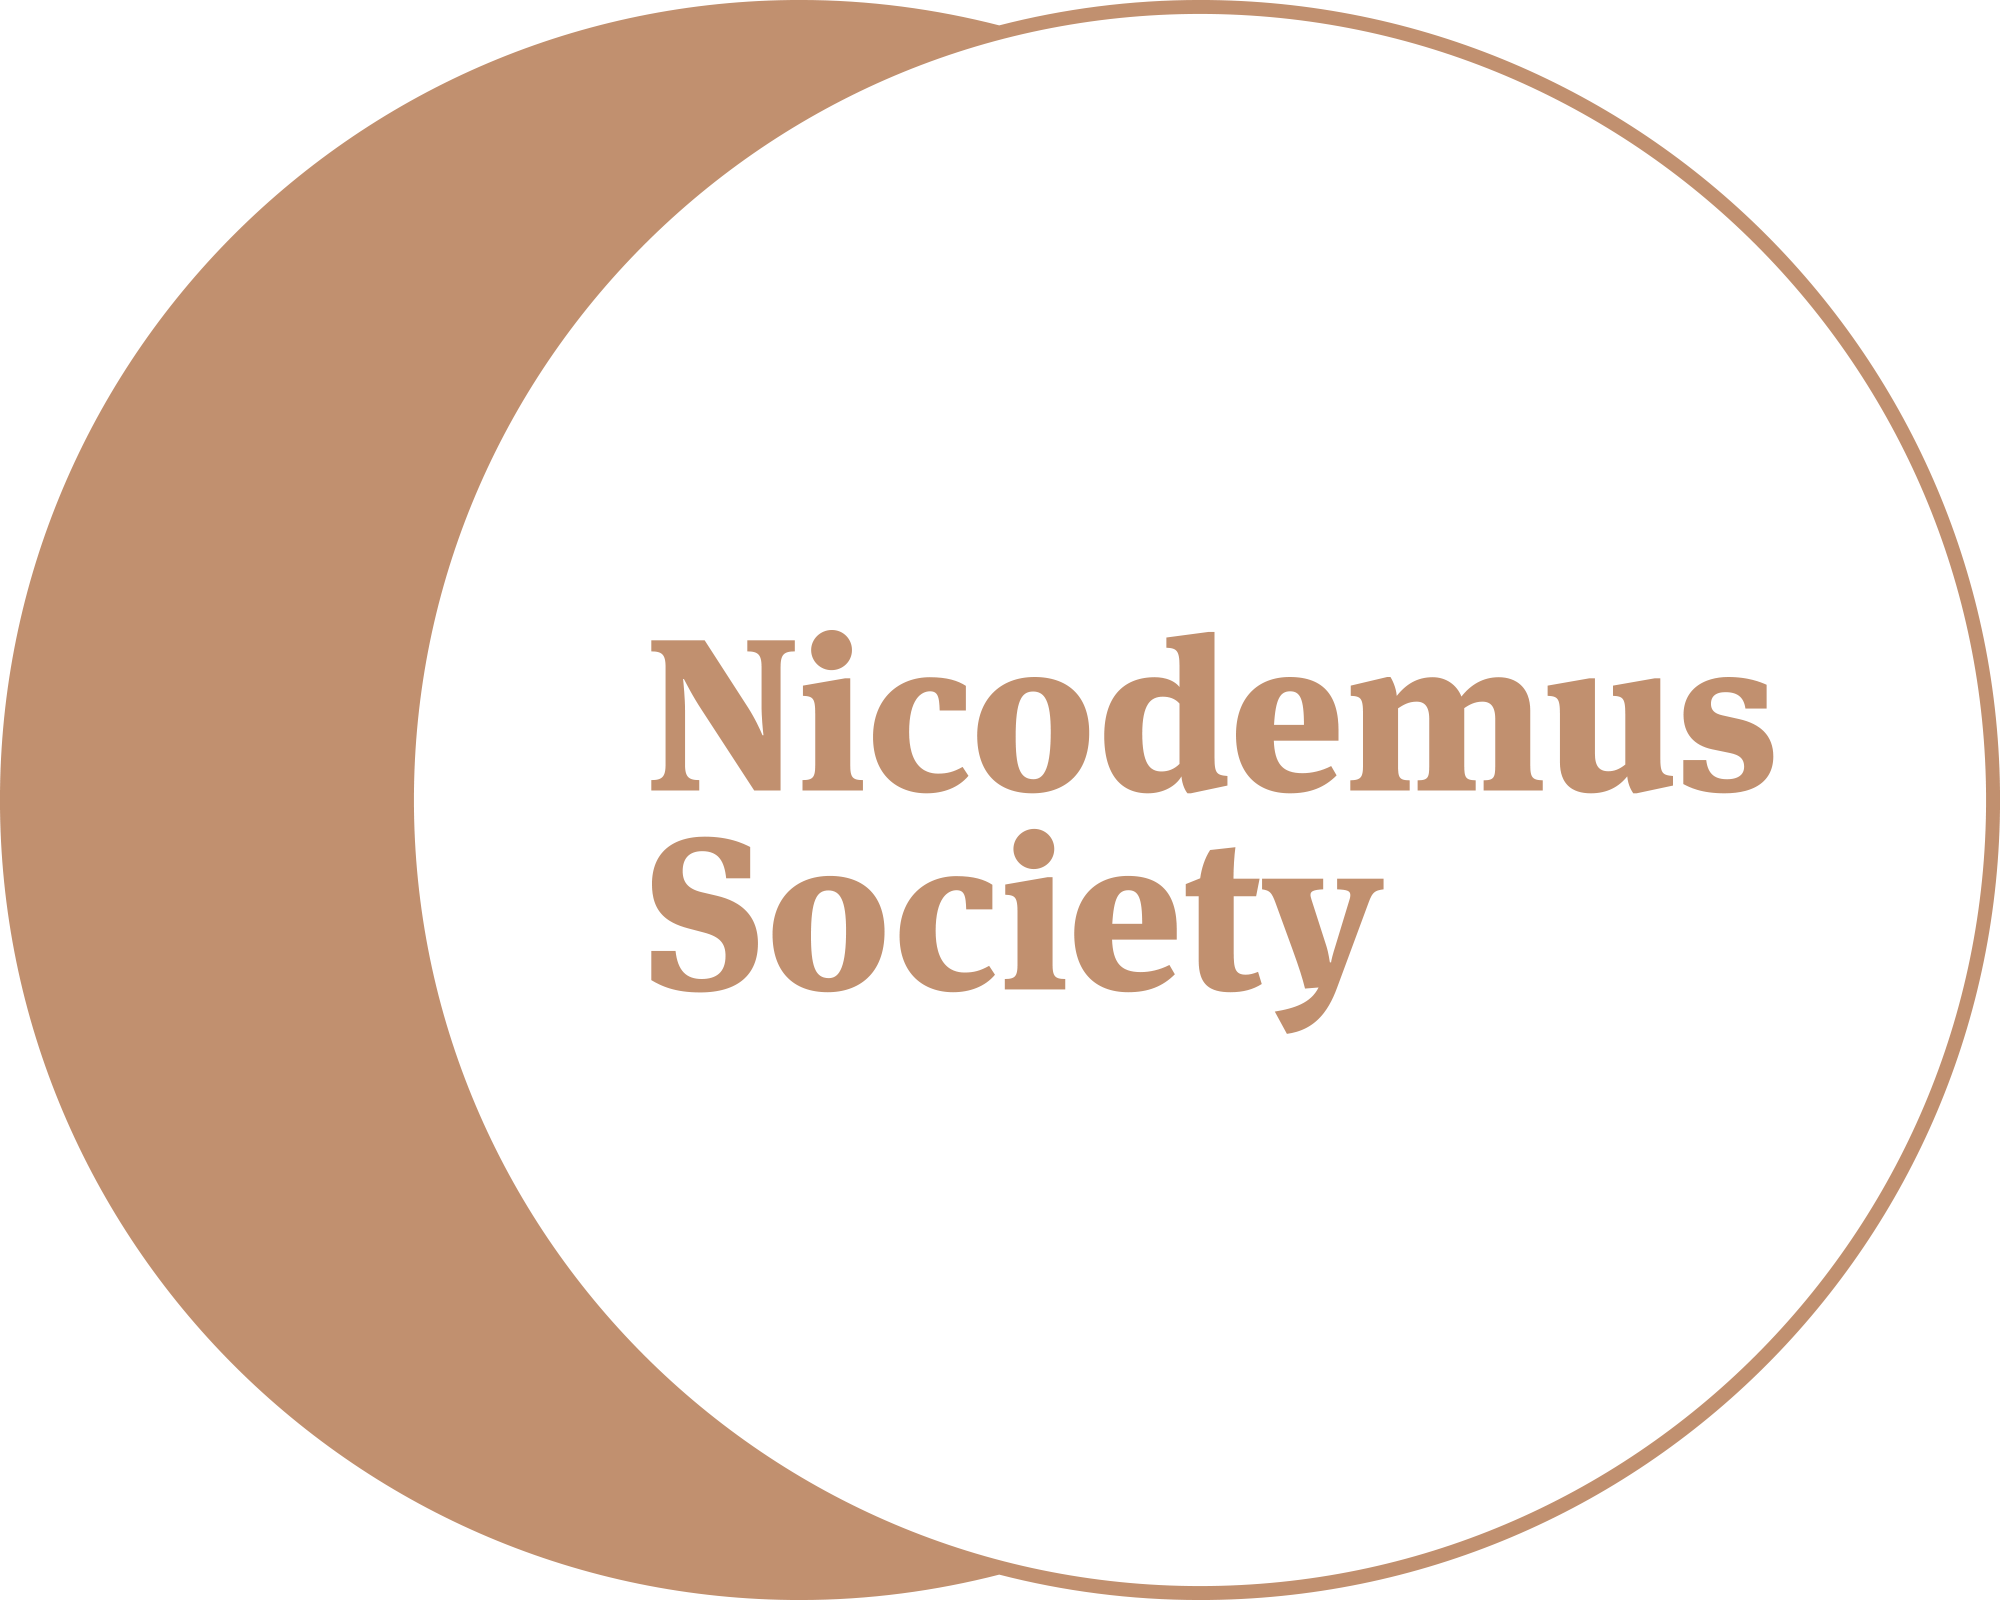 Nicodemus Society